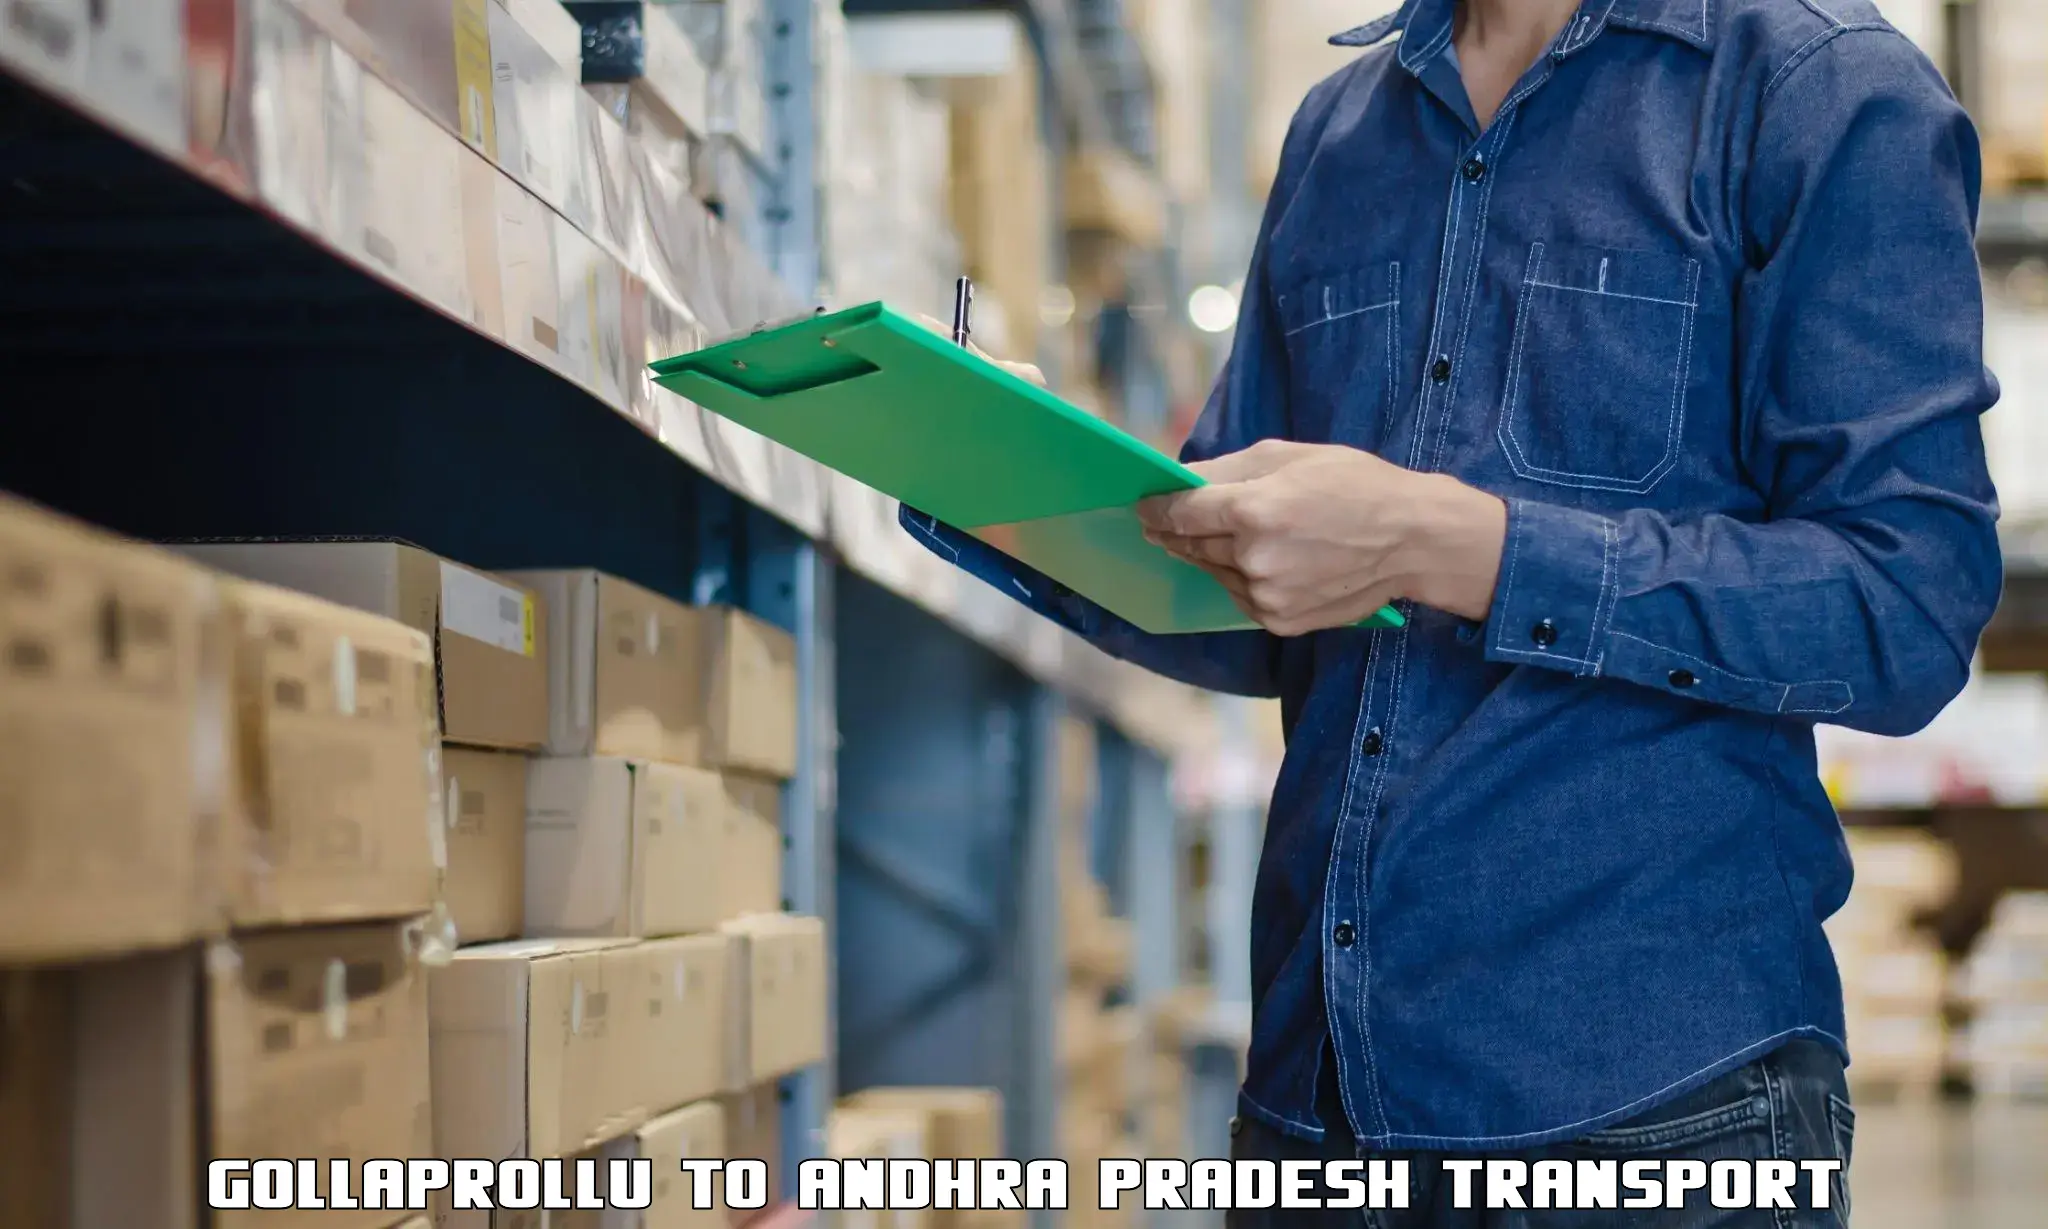 International cargo transportation services Gollaprollu to Vissannapeta